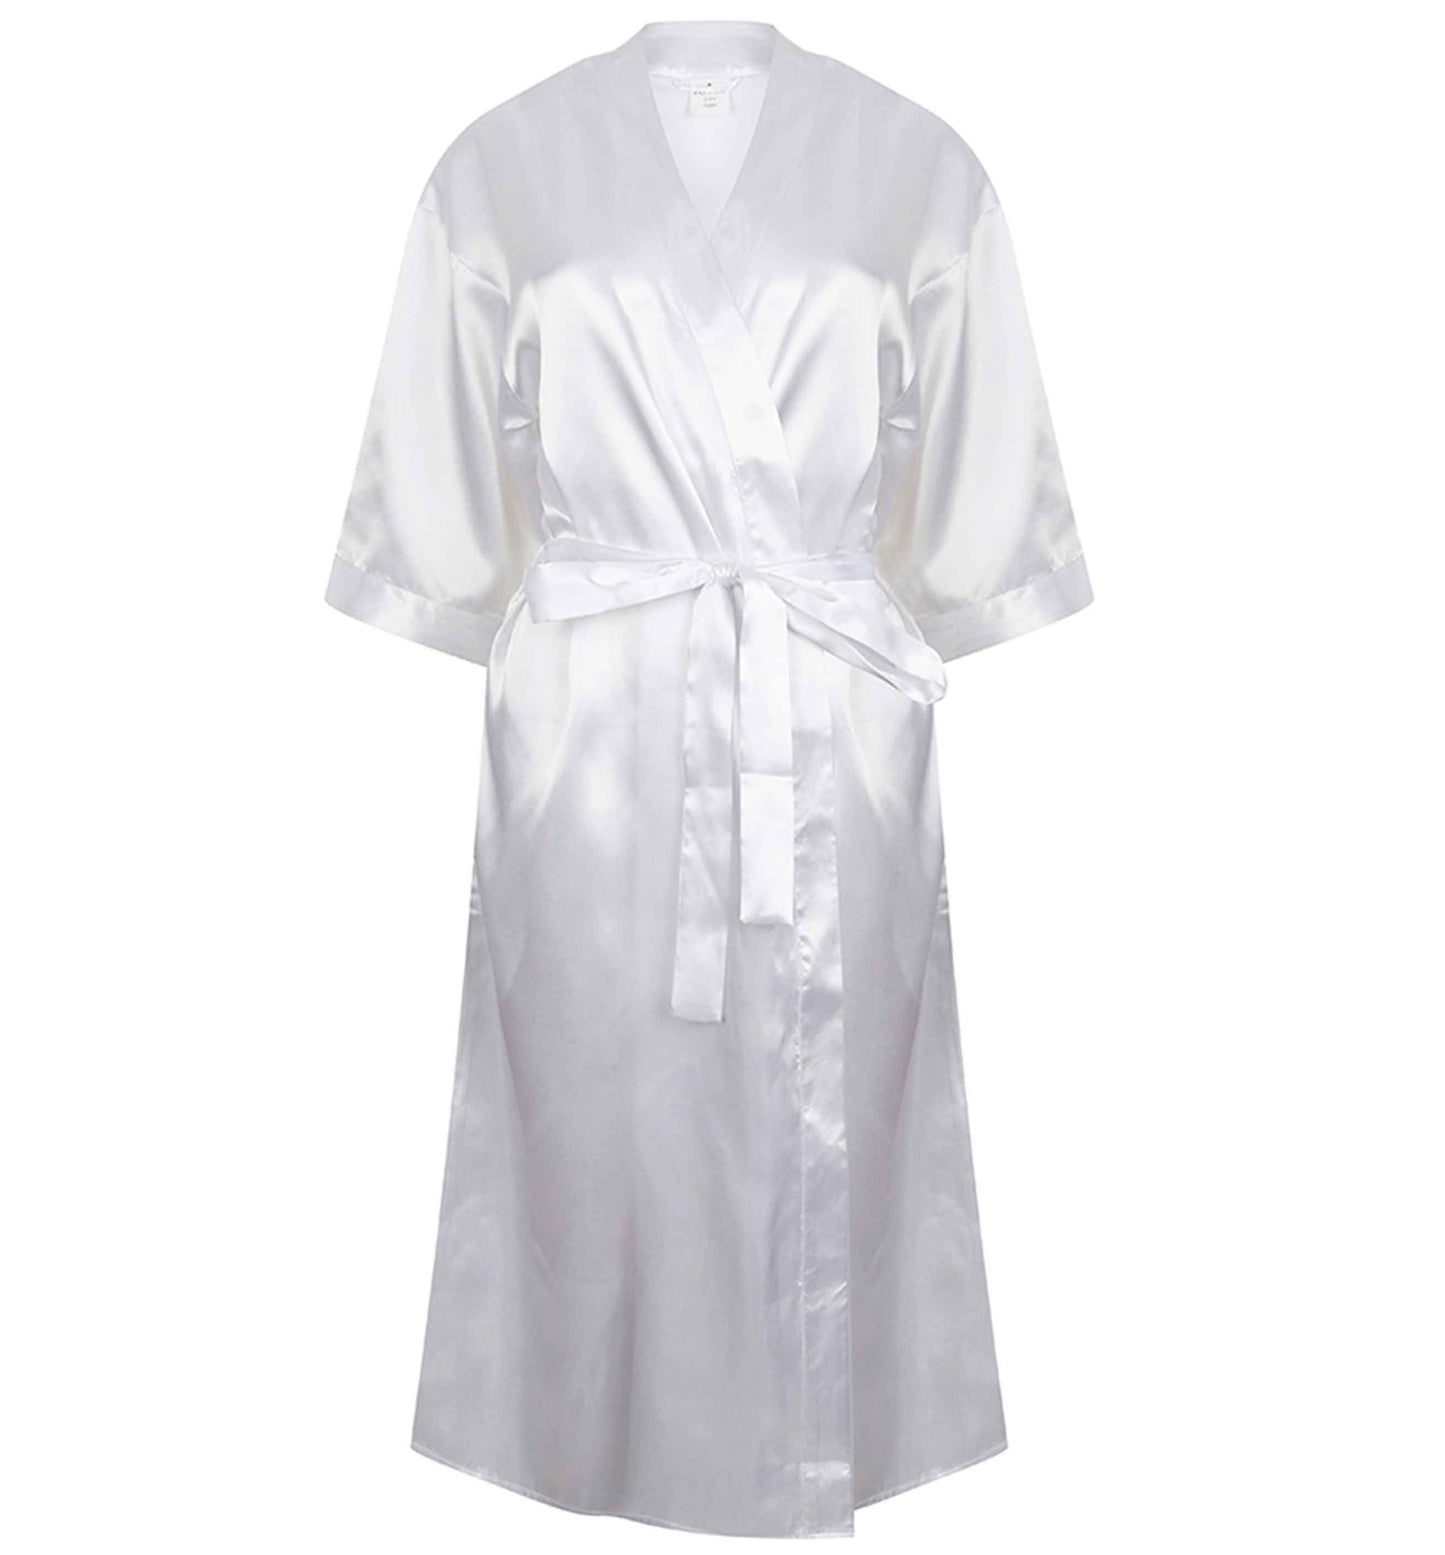 Our cruise honeymoon |  8-18 | Kimono style satin robe | Ladies dressing gown